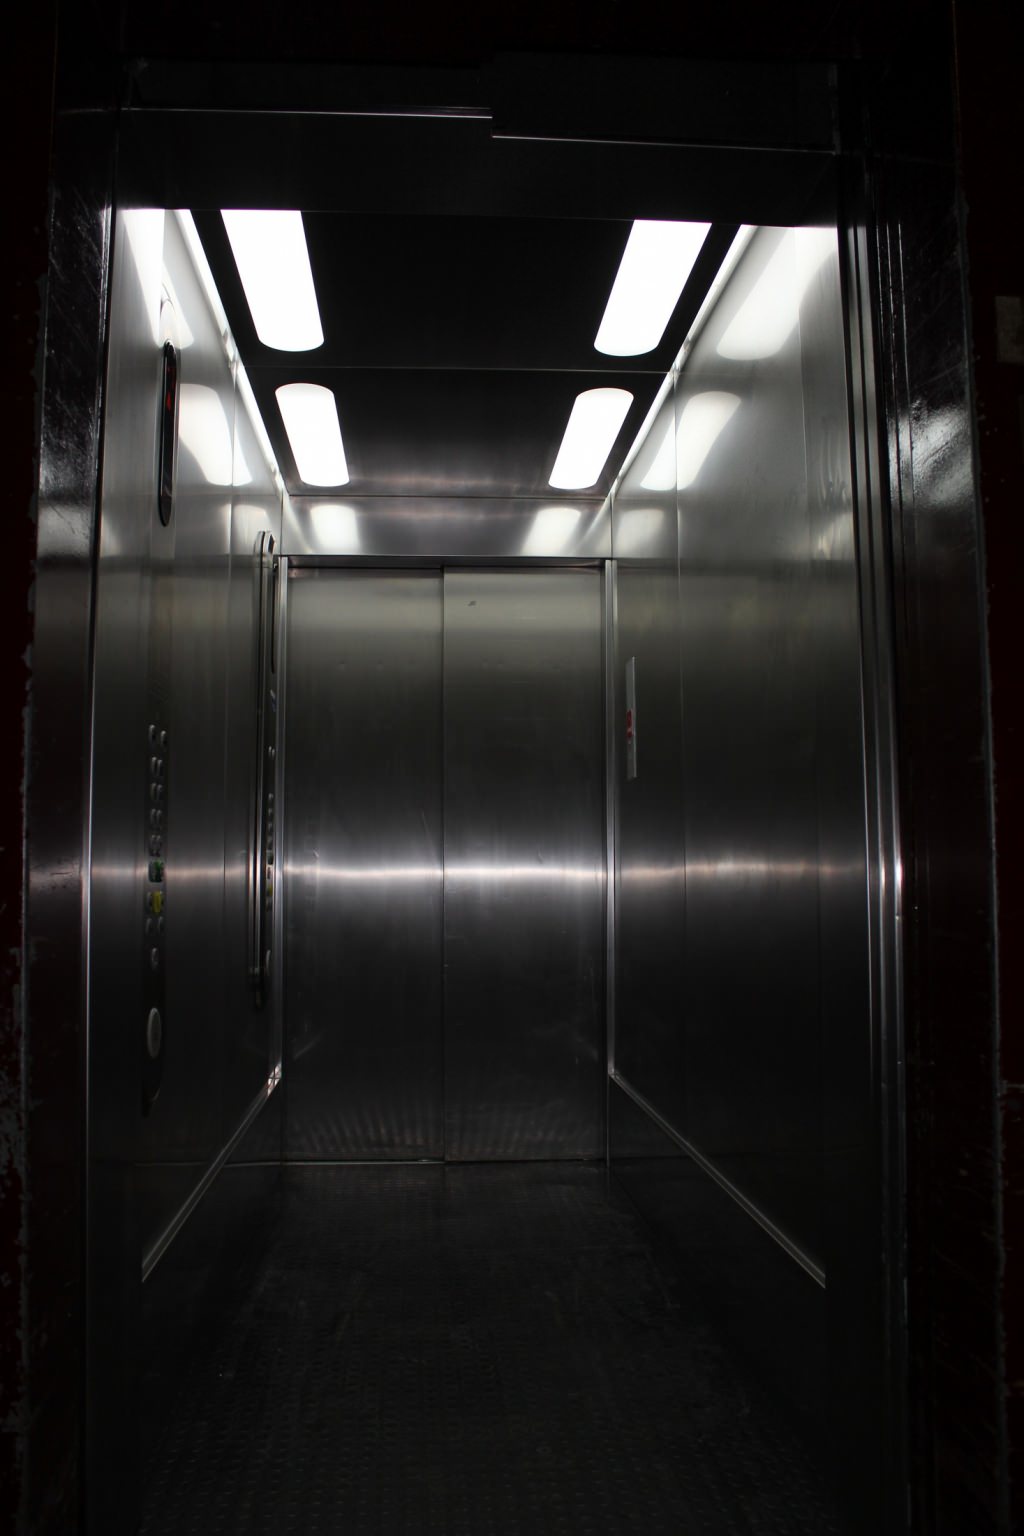 Nos habillages de cabines d' ascenseurs inox sont disponibles dans de nombreuses finitions : inox lin, inox brossé , inox grain de cuir ... Les plafonniers sont conçus et fabriqués dans notre menuiser